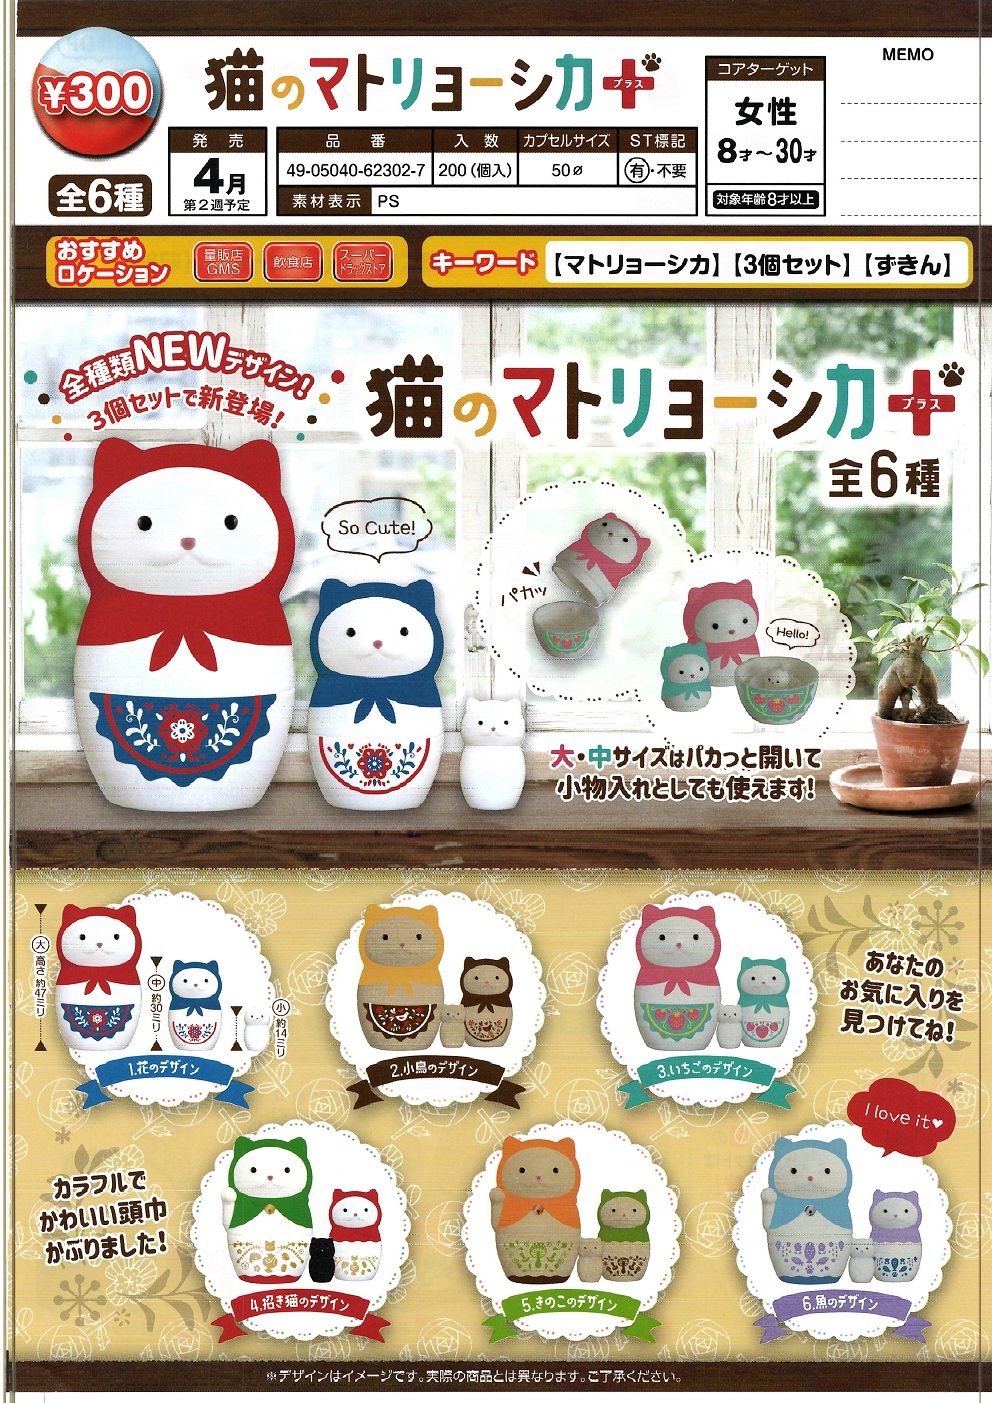 300日元扭蛋 小手办 猫咪套娃 全6种 (1袋40个)  623027